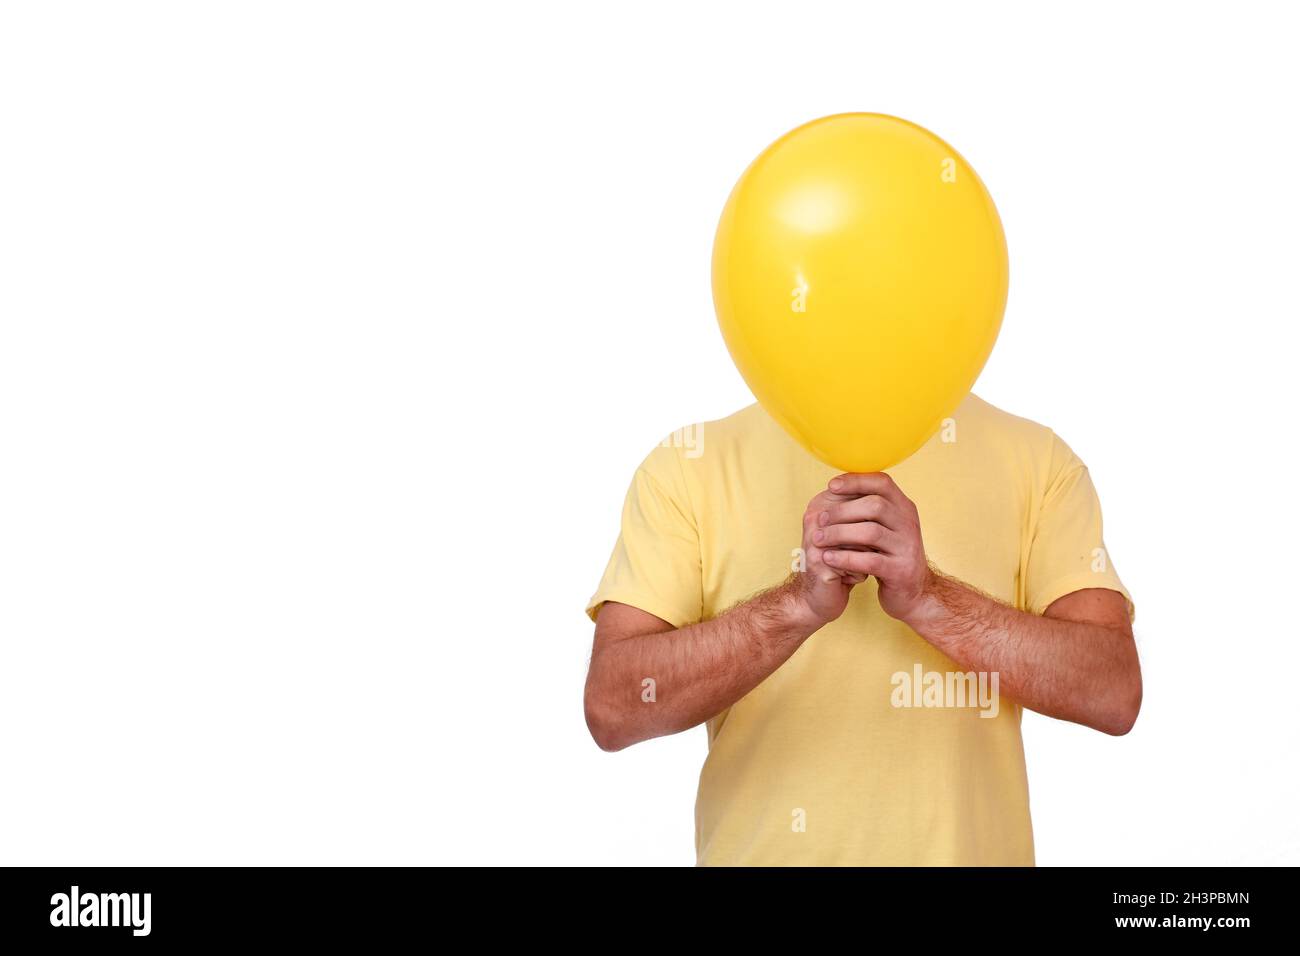 Un uomo tiene un pallone davanti a lui. Sfera gialla che copre il viso. Foto Stock